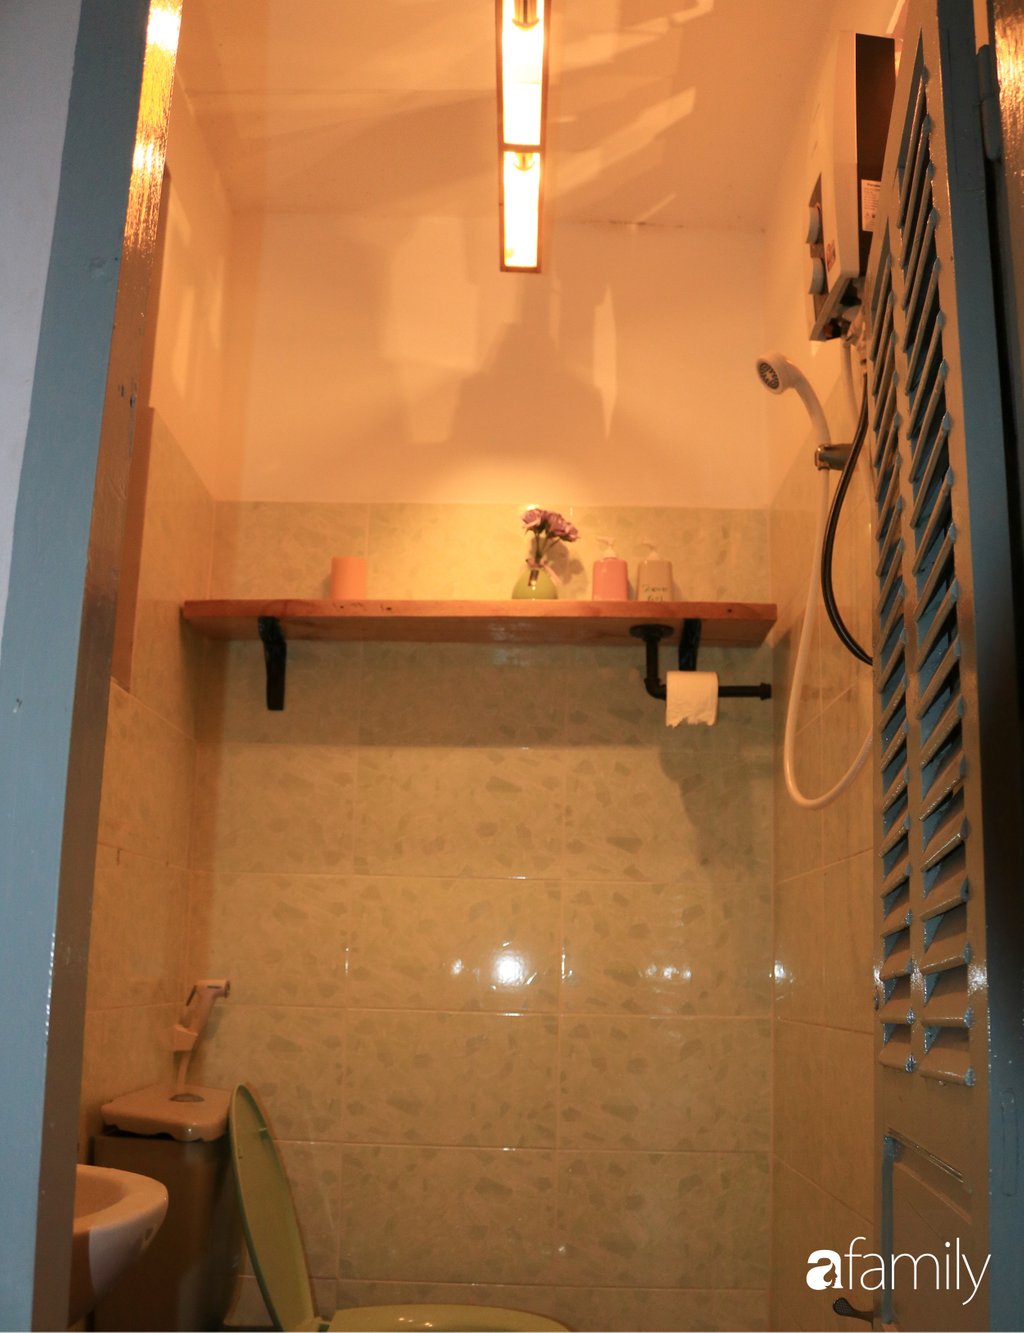 Góc phòng tắm tiện lợi cùng các khu vực chức năng hữu ích, chỉ chiếm diện tích nhỏ nhưng vẫn hoàn thiện từ thẩm mỹ đến công năng.